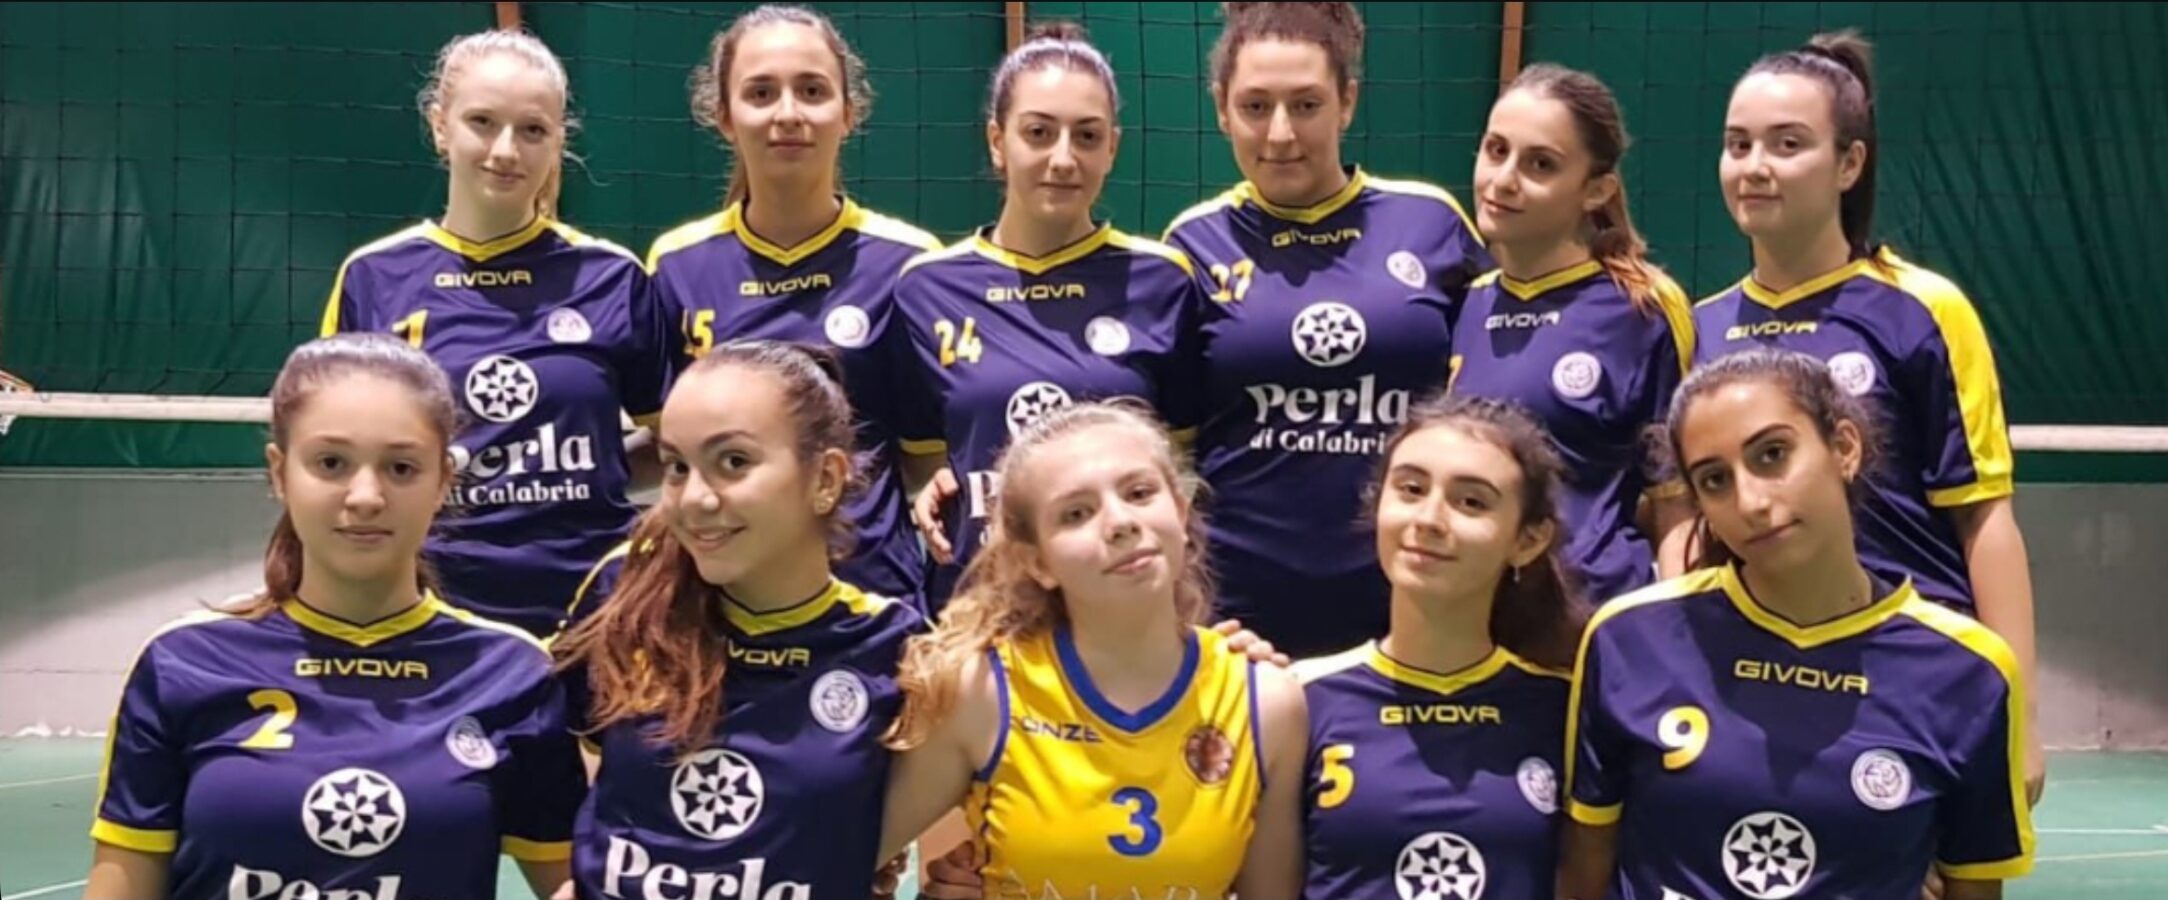 Volley Femminile Corigliano Rossano: Insostituibili -Cosenza - Calabria - Squadra Pallavolo - Volley Cirò